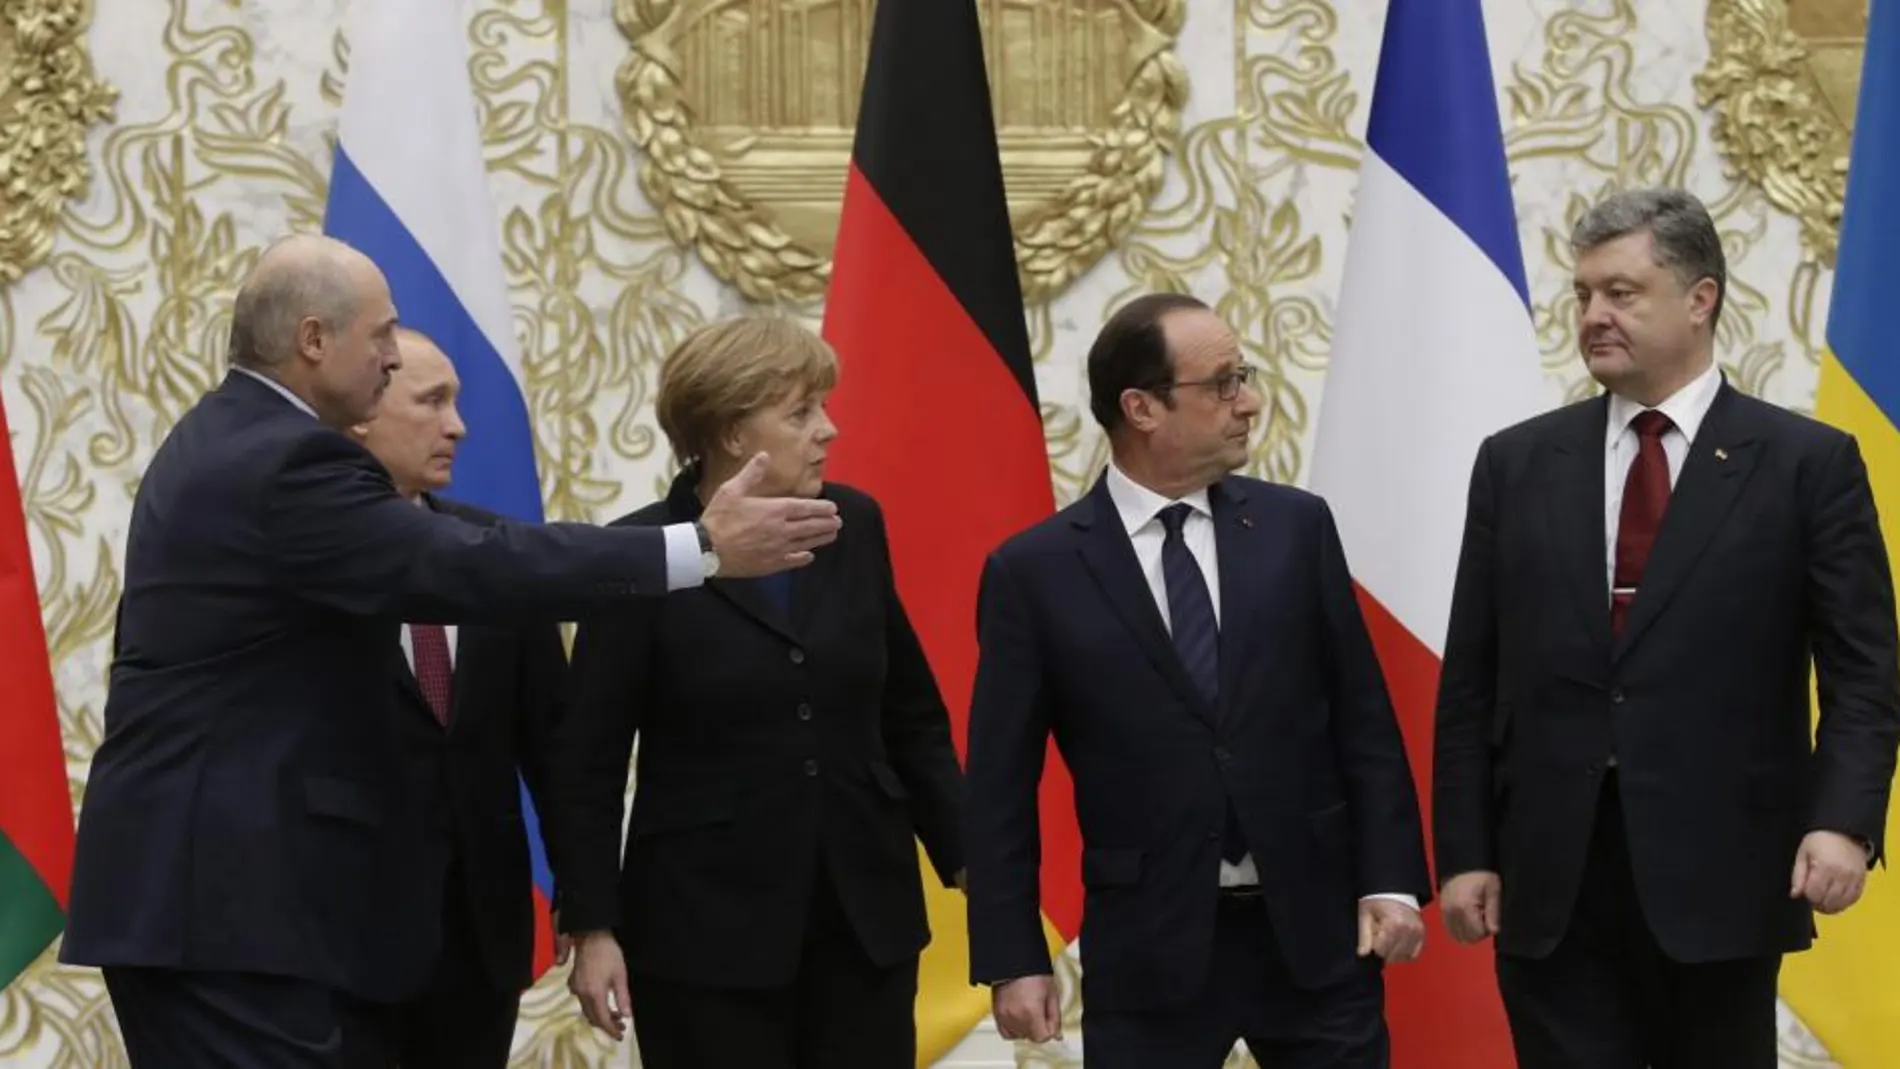 De izquierda a derecha, el presidente de Bielorrusia, Alexander Lukashenko; Vladimir Putin; Angela Merkel; Francois Hollande y Petro Poroshenko.